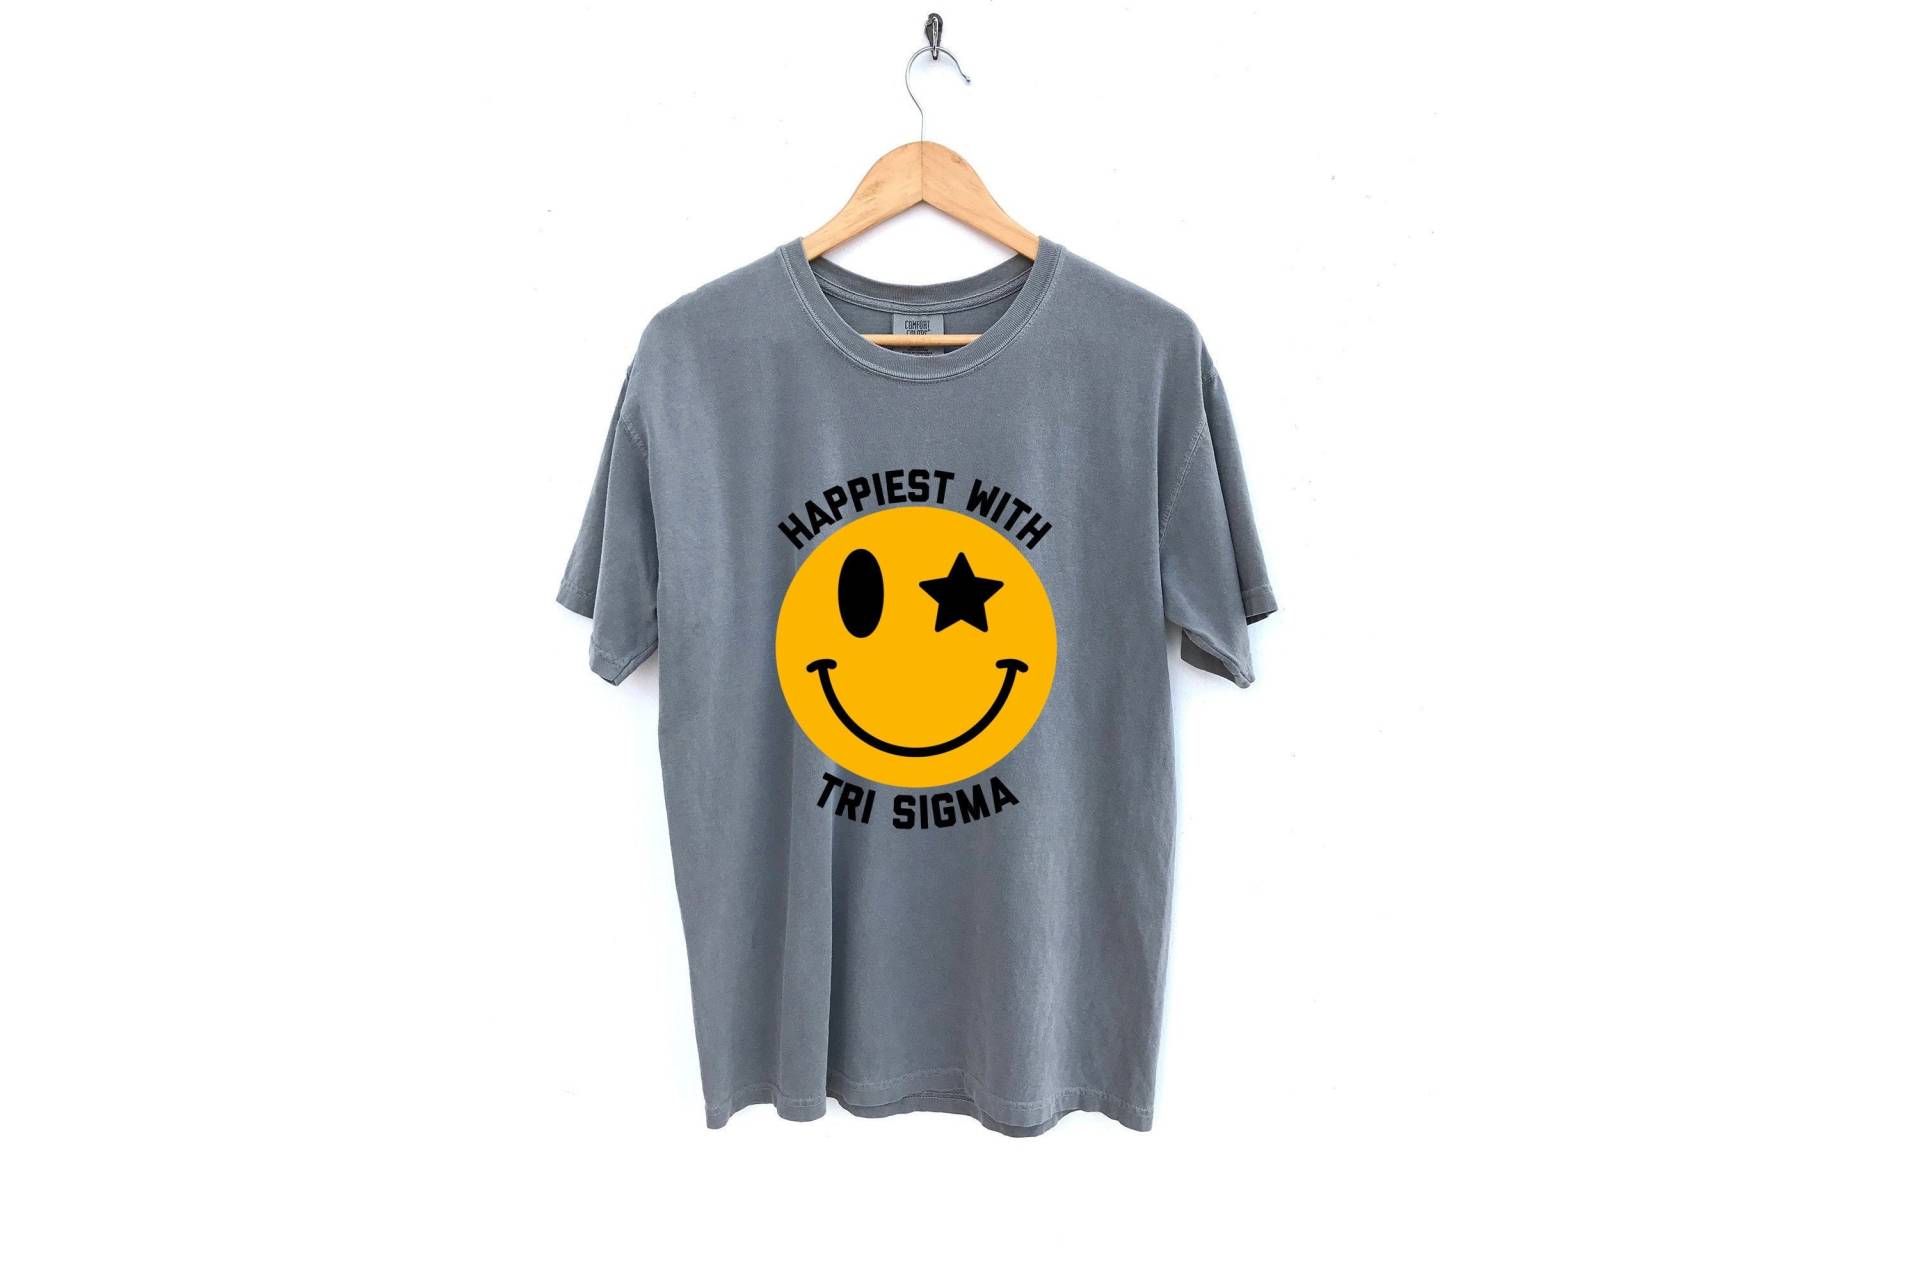 Tri Sigma/Glücklichstes Mit Sorority Shirt Smiley Face Comfort Colors Grey von MadebyMollzShop